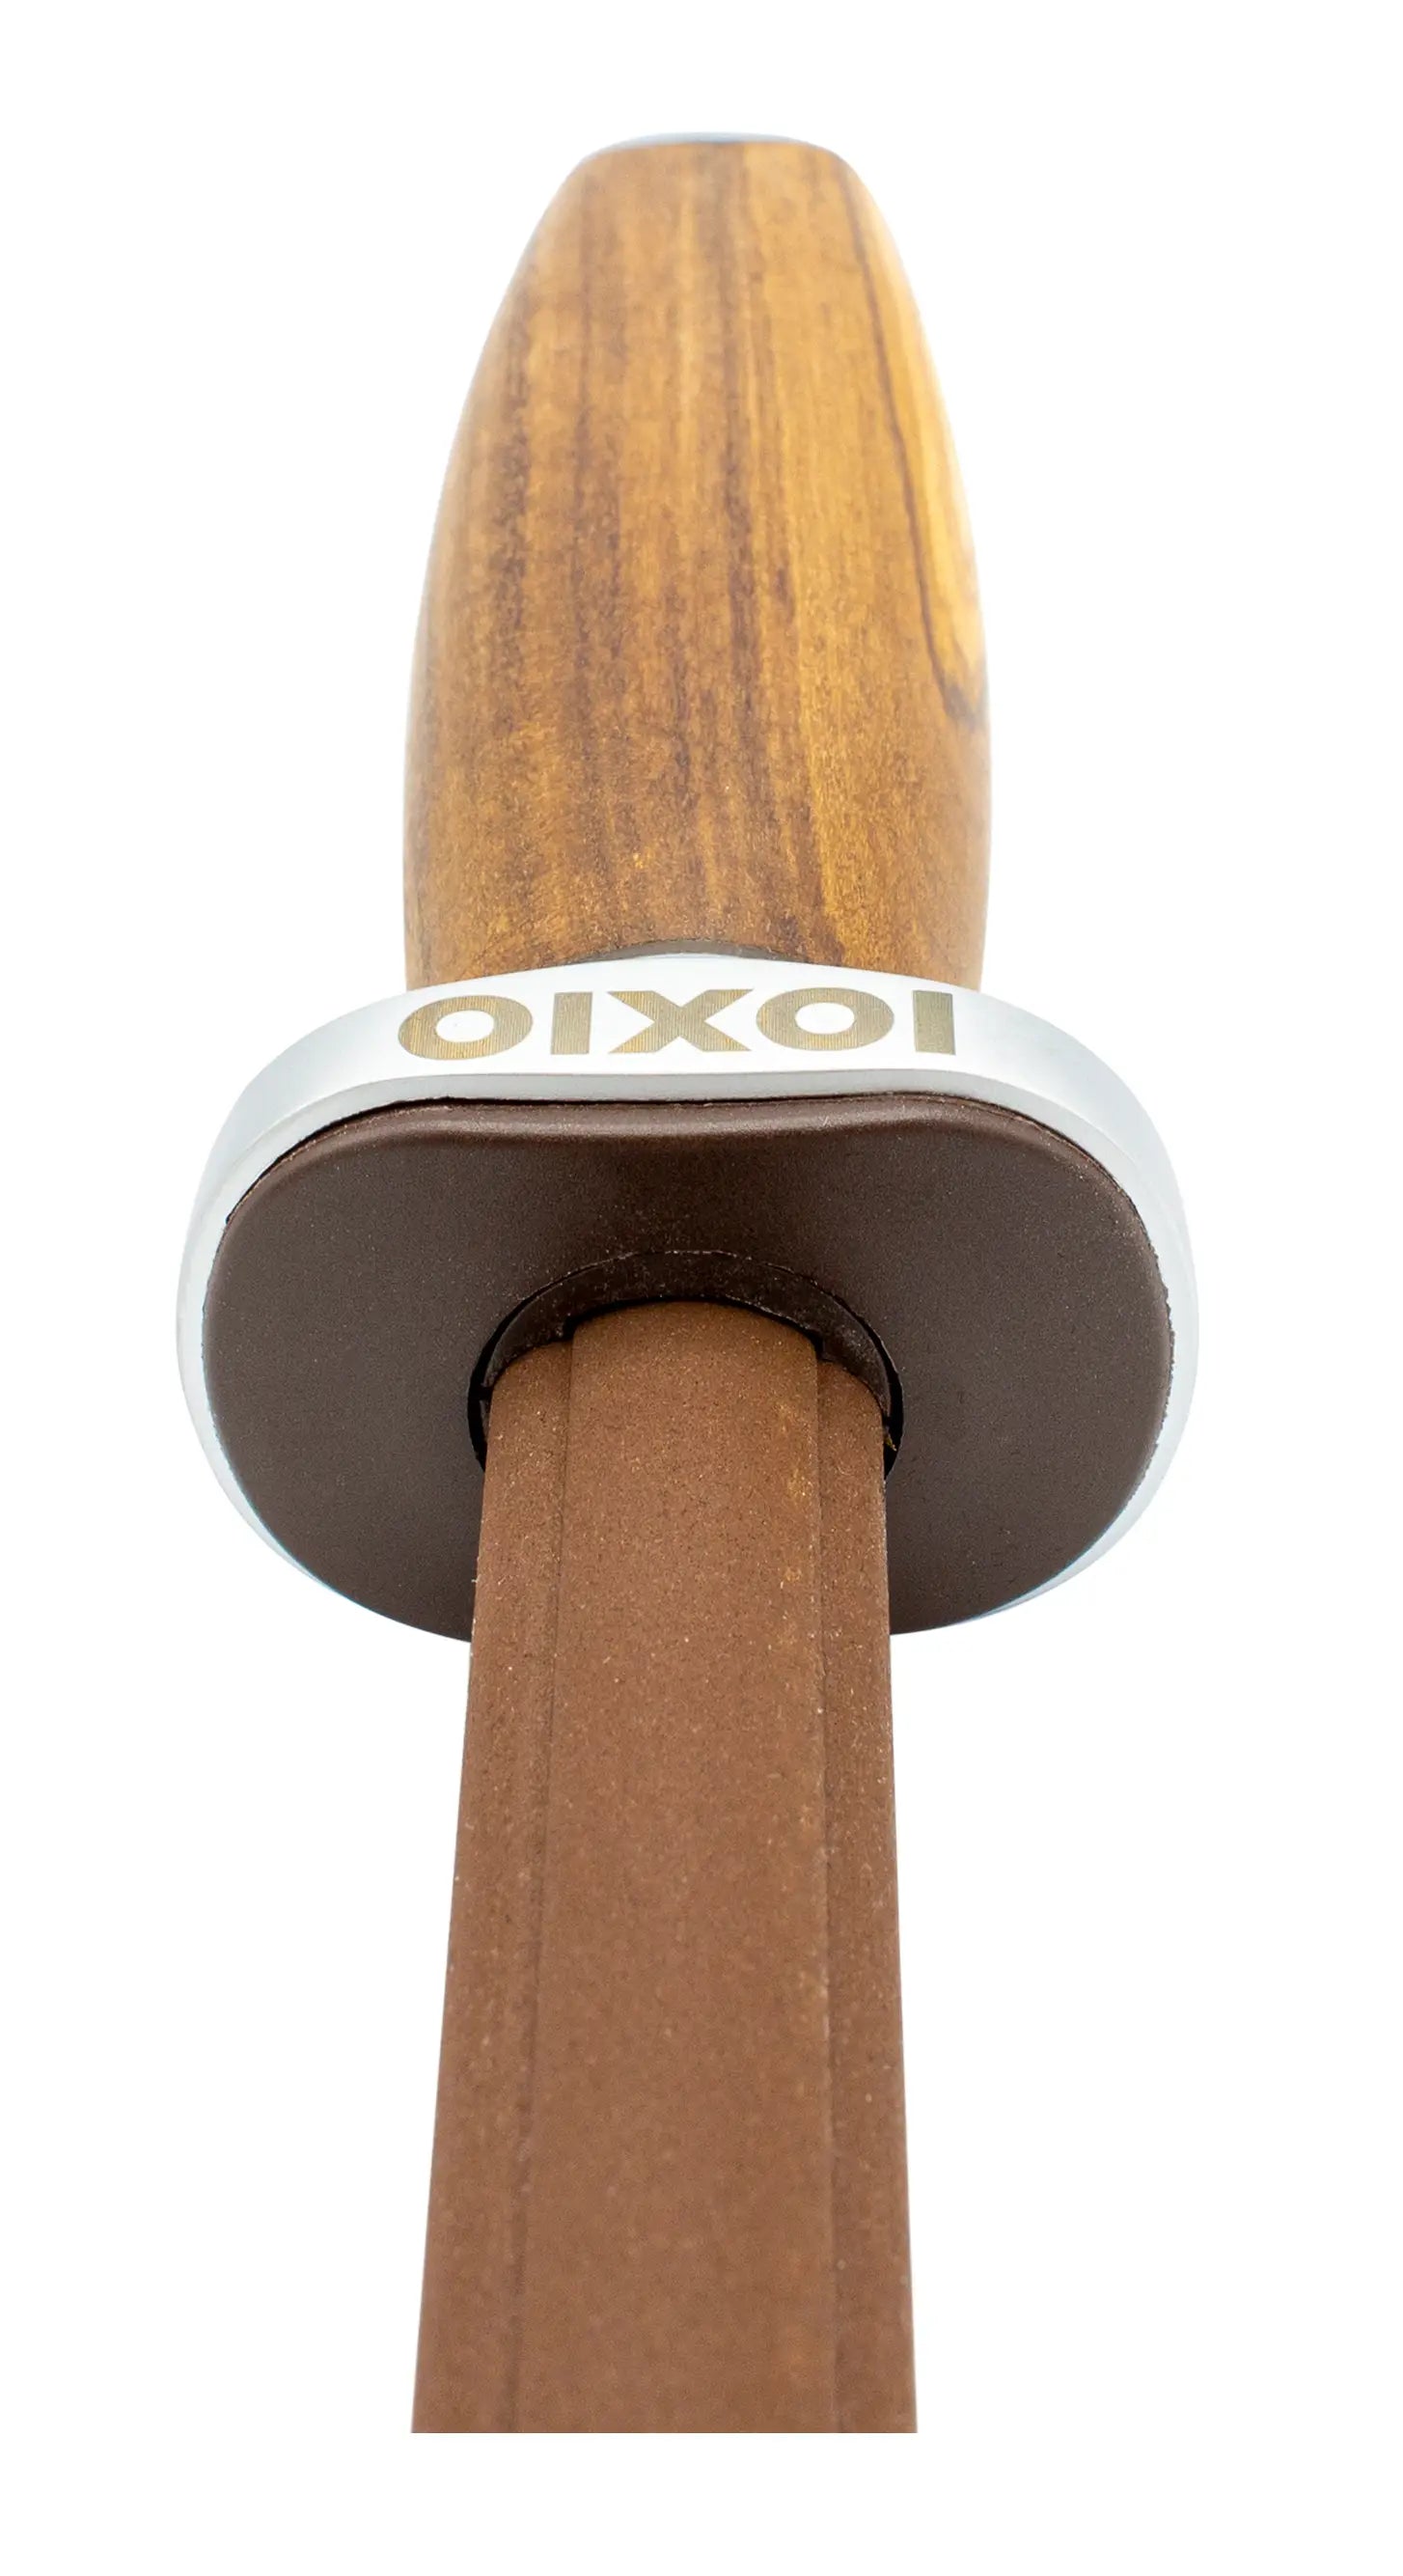 IOXIO Keramik Wetzstab OLIVE WOOD oval F360 J800 für den Grob- &amp; Normalschliff